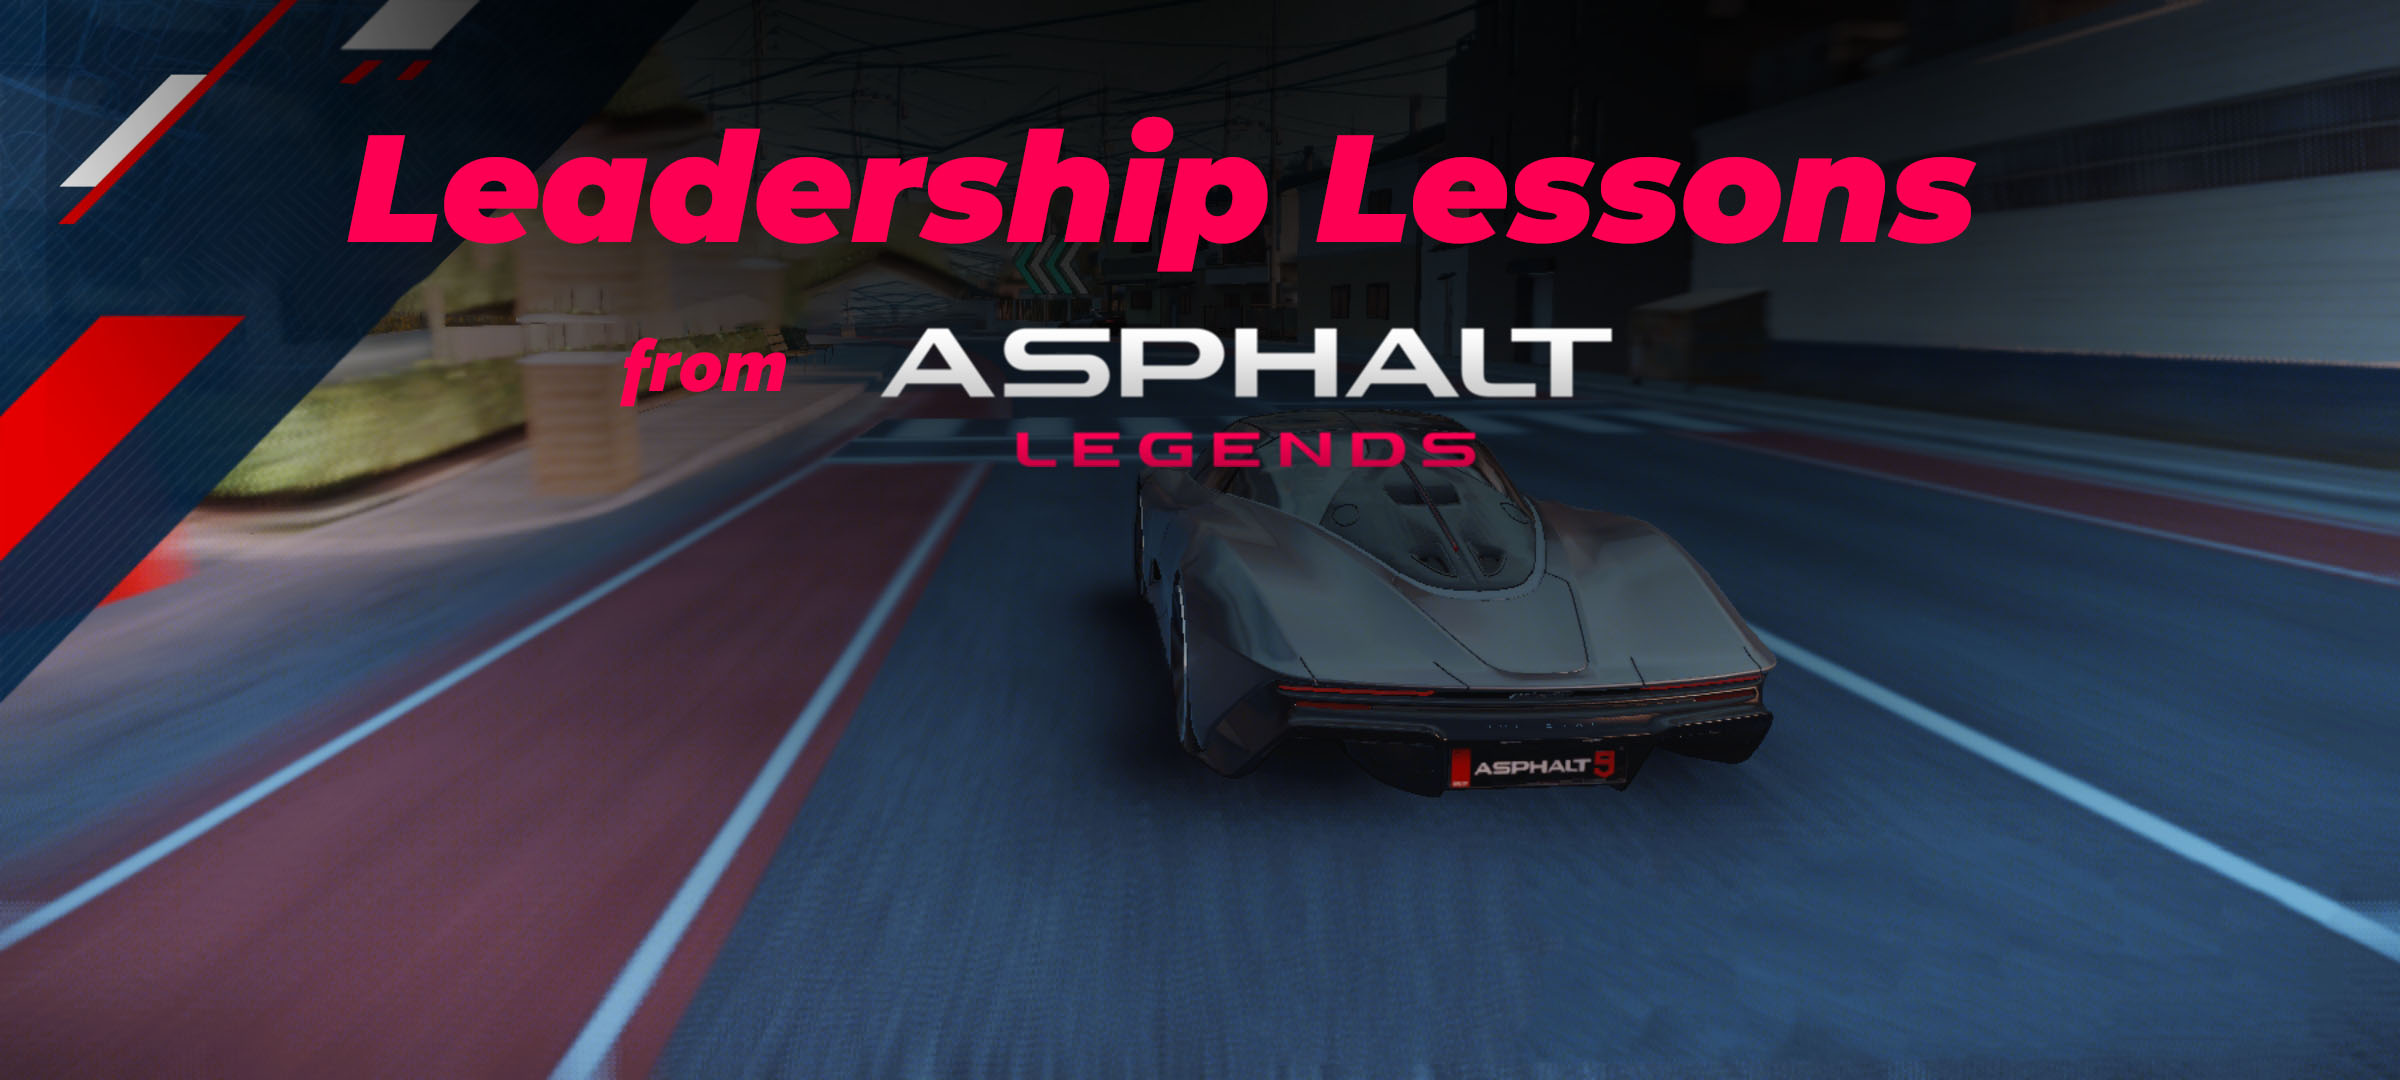 Leadership lessons from Asphalt Legends